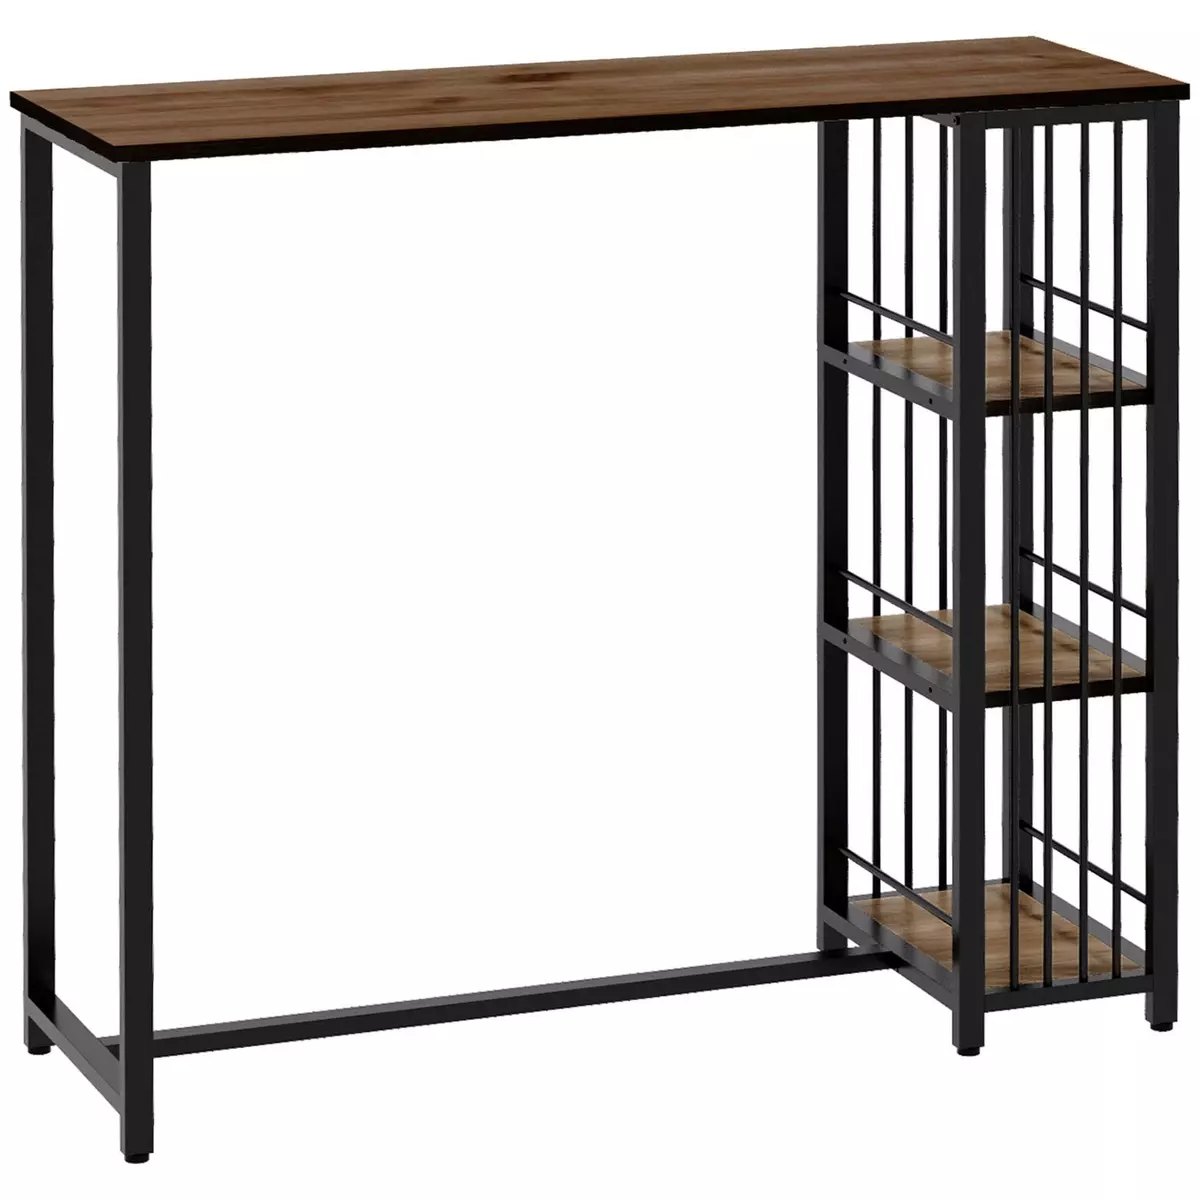 HOMCOM Table de bar 3 étagères style industriel acier noir aspect panneaux aspect bois